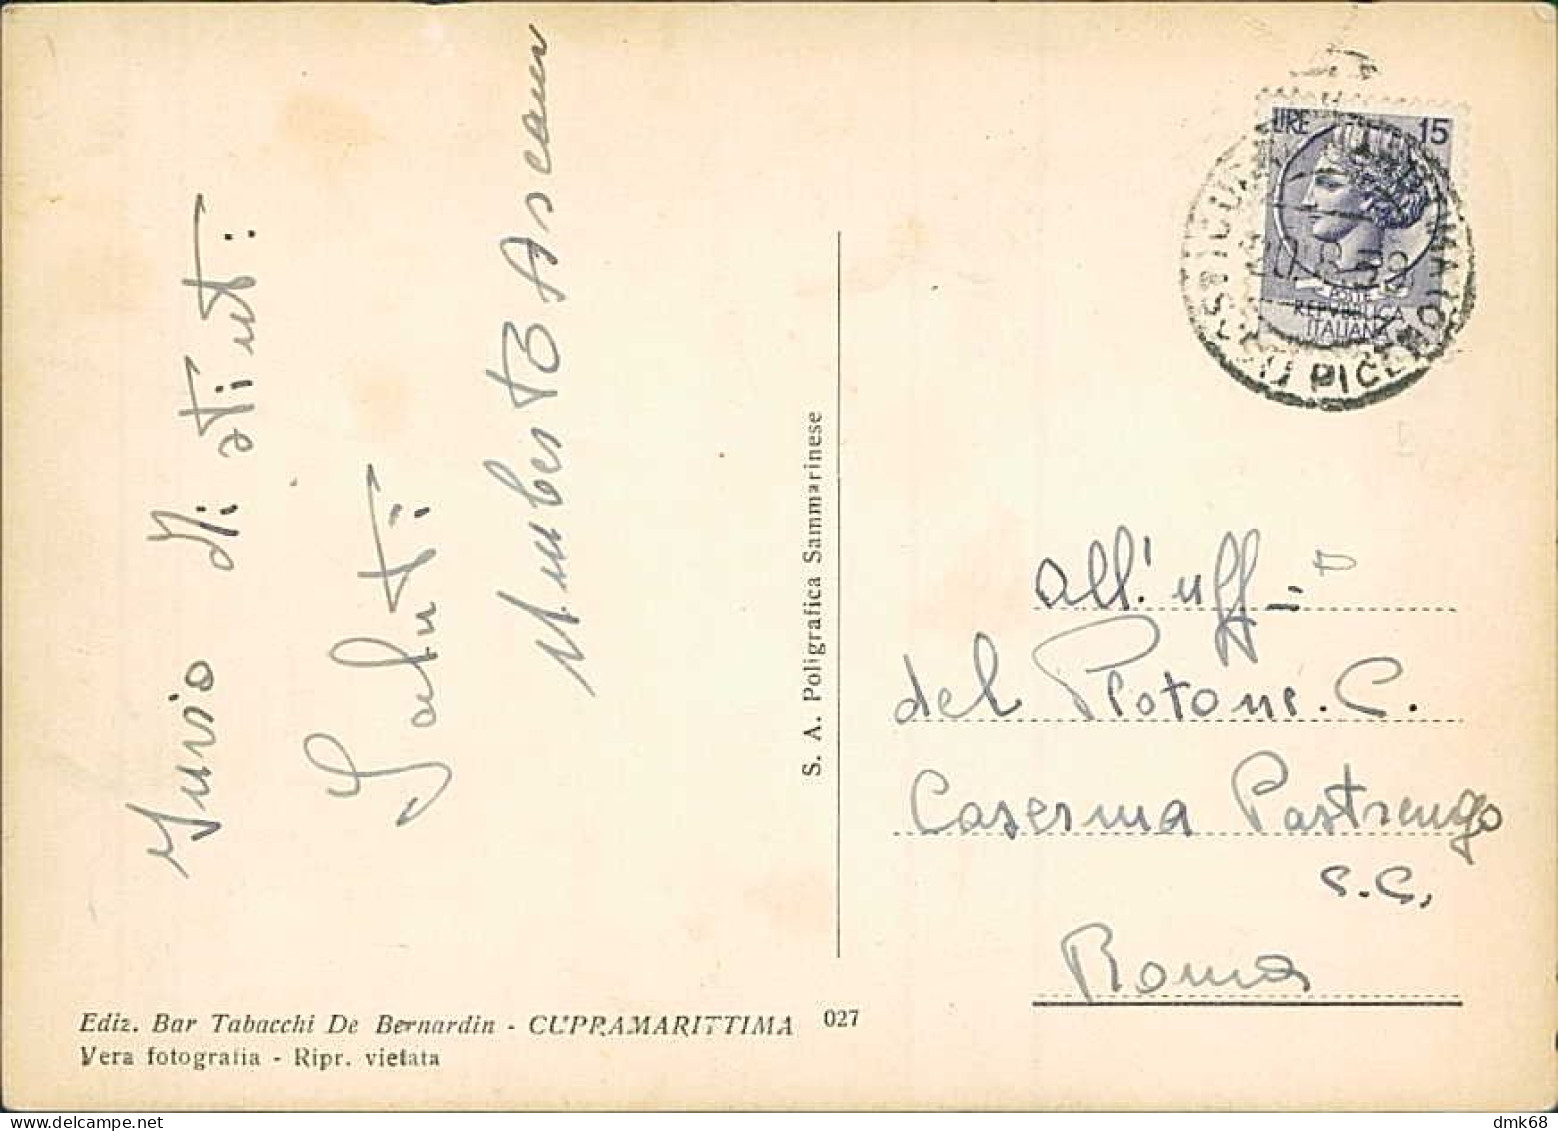 CUPRA MARITTIMA ( ASCOLI PICENO ) SALUTI / VEDUTINE / PIN UP - EDIZ. DE BERNARDIN - SPEDITA 1959 (20710) - Ascoli Piceno